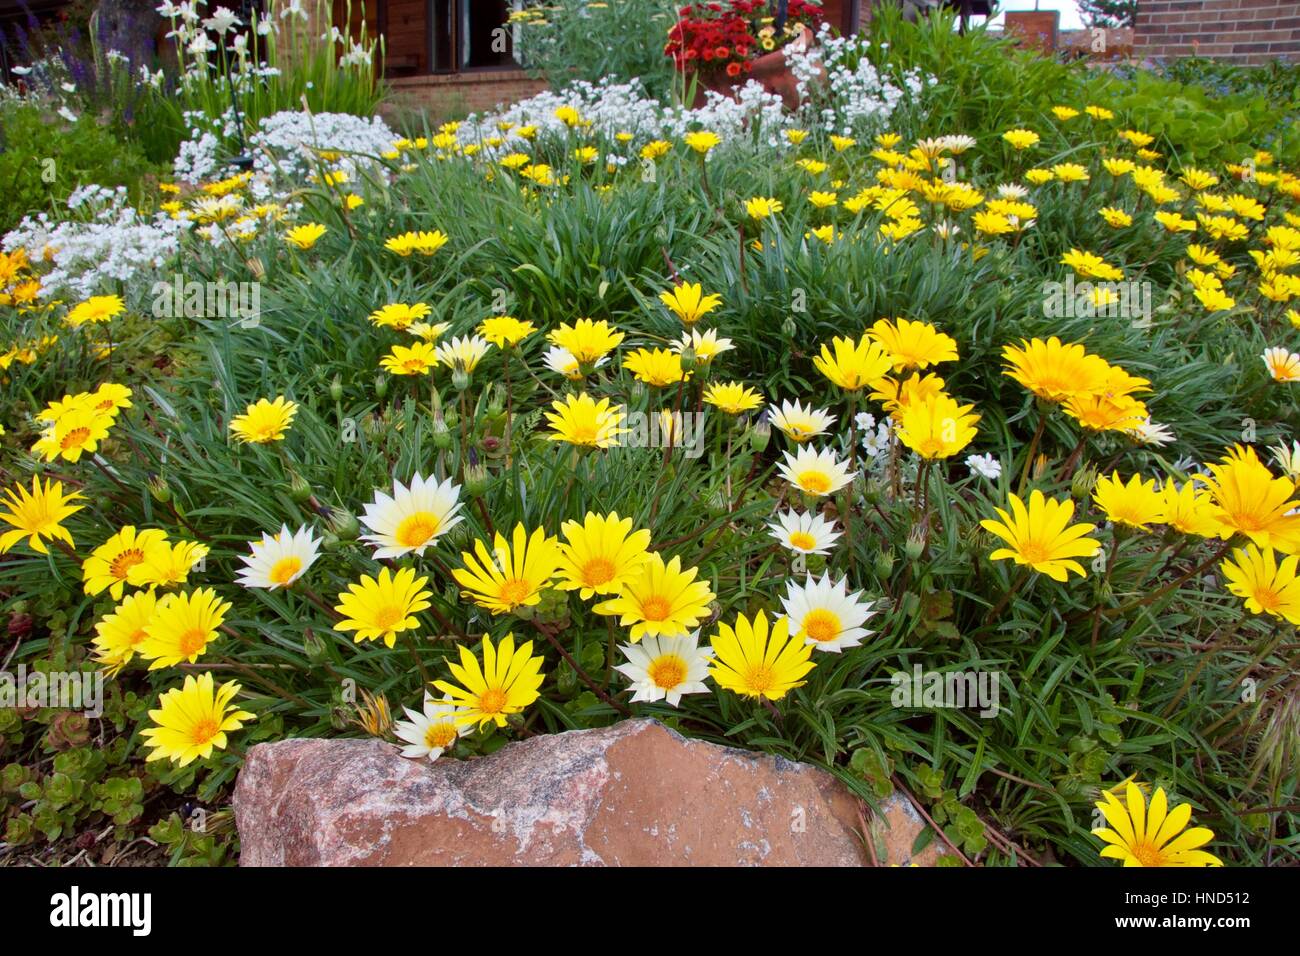 Colorado Gold Gazania in a garden seting Stock Photo